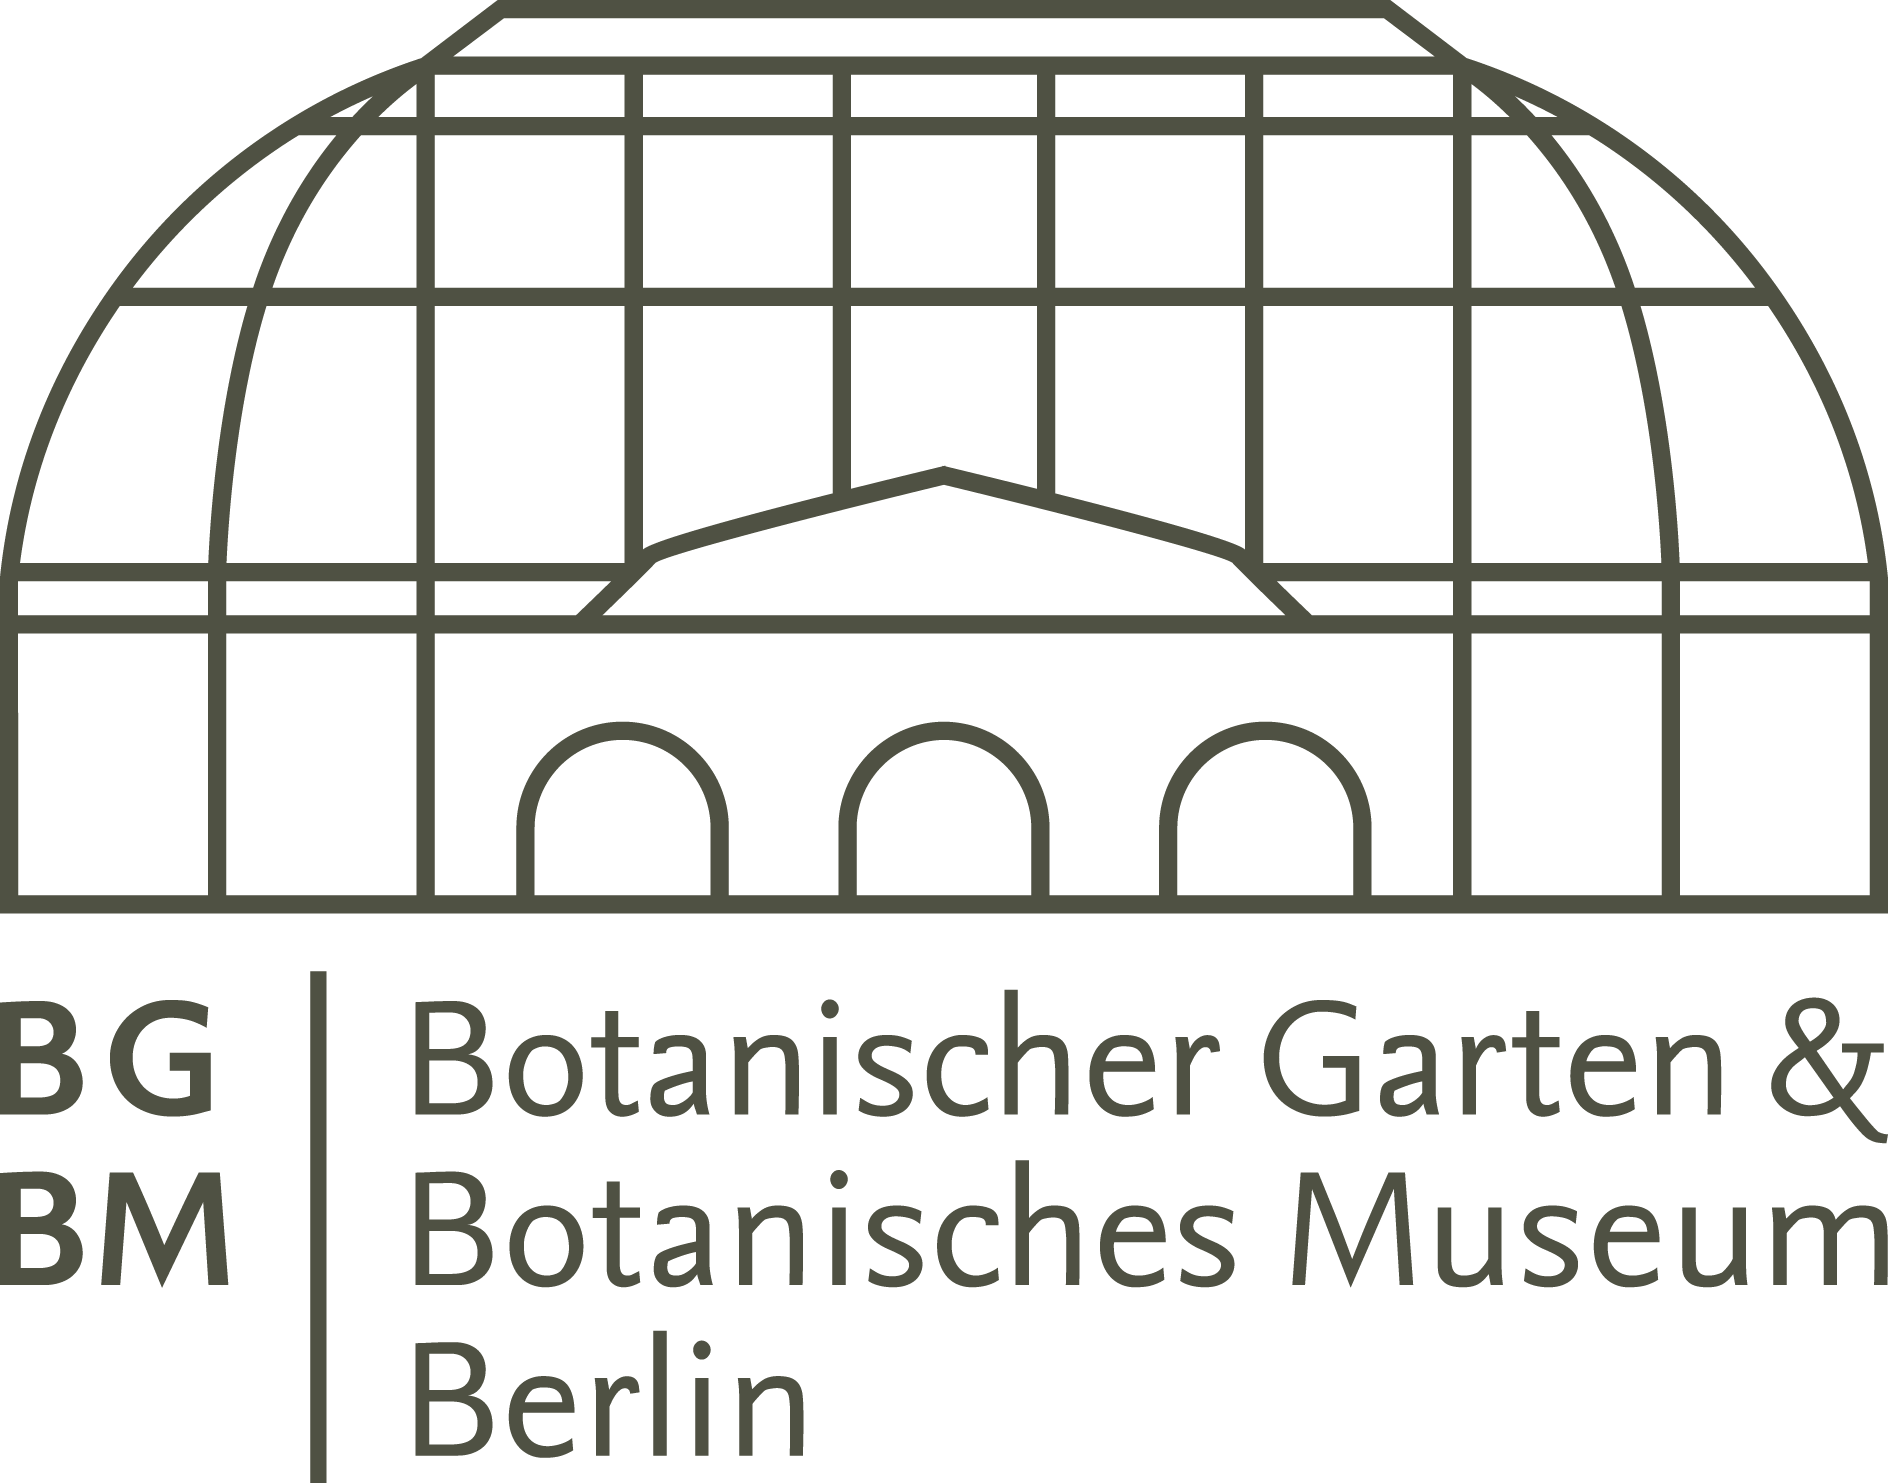 link=http://www.bgbm.org alt="Botanischer Garten und Botanisches Museum Berlin"